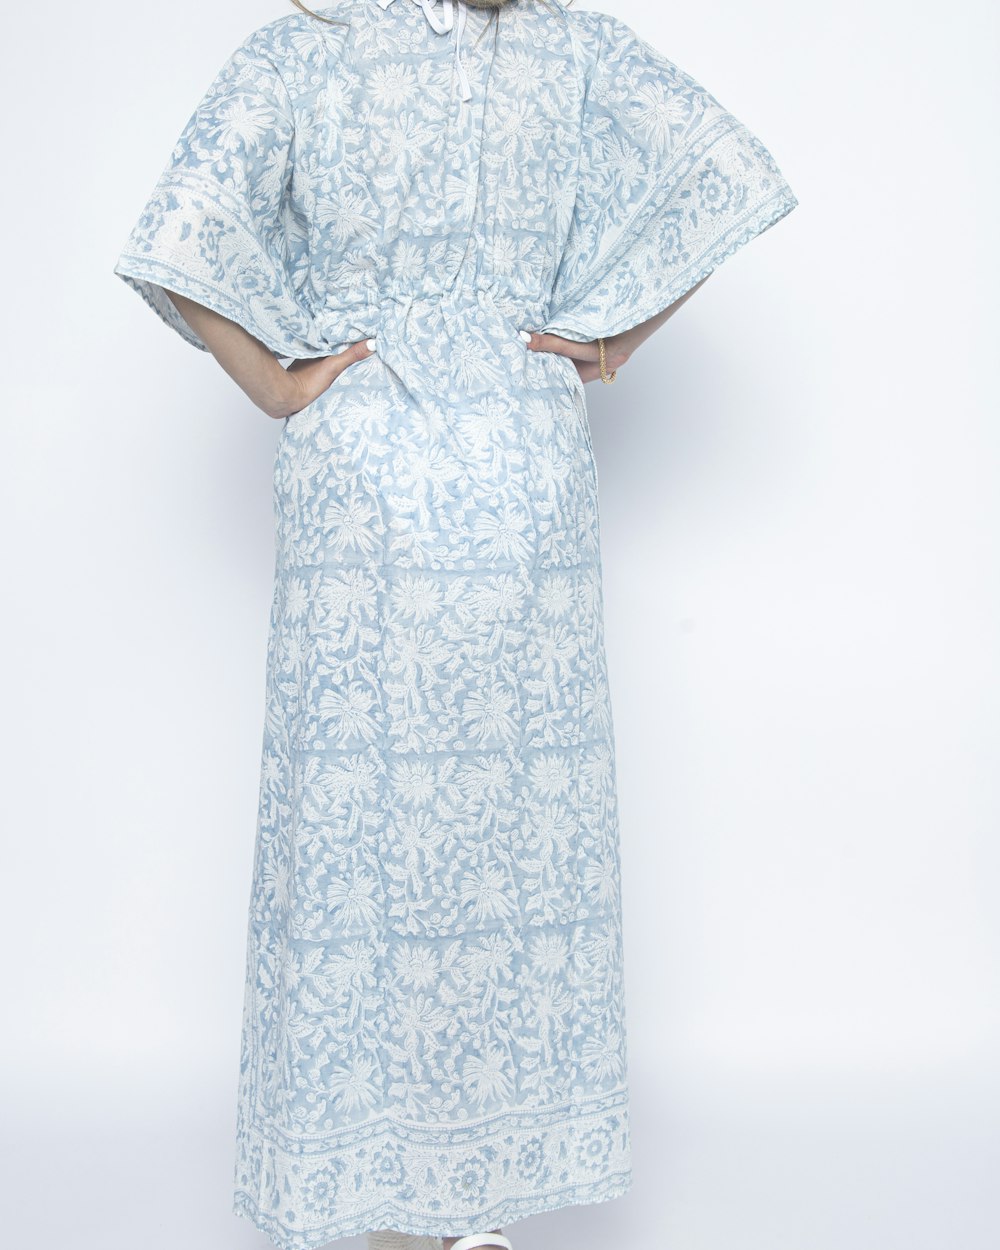 una donna in un vestito blu e bianco